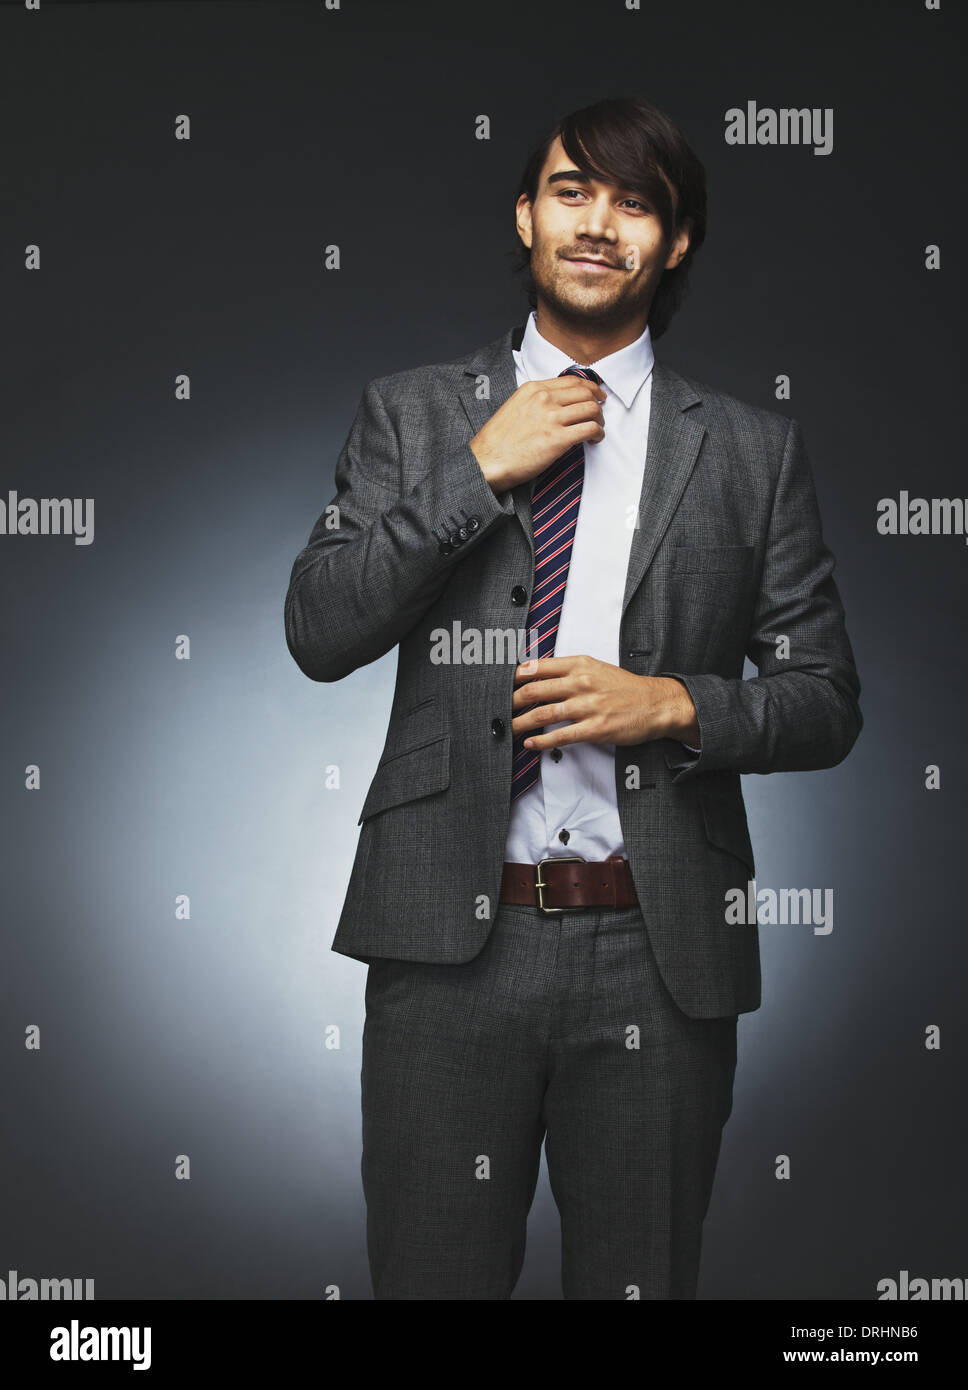 Immagine del fiducioso giovane nel business suit guardando lontano e regolando la sua cravatta. Asian modello maschile su sfondo nero. Foto Stock